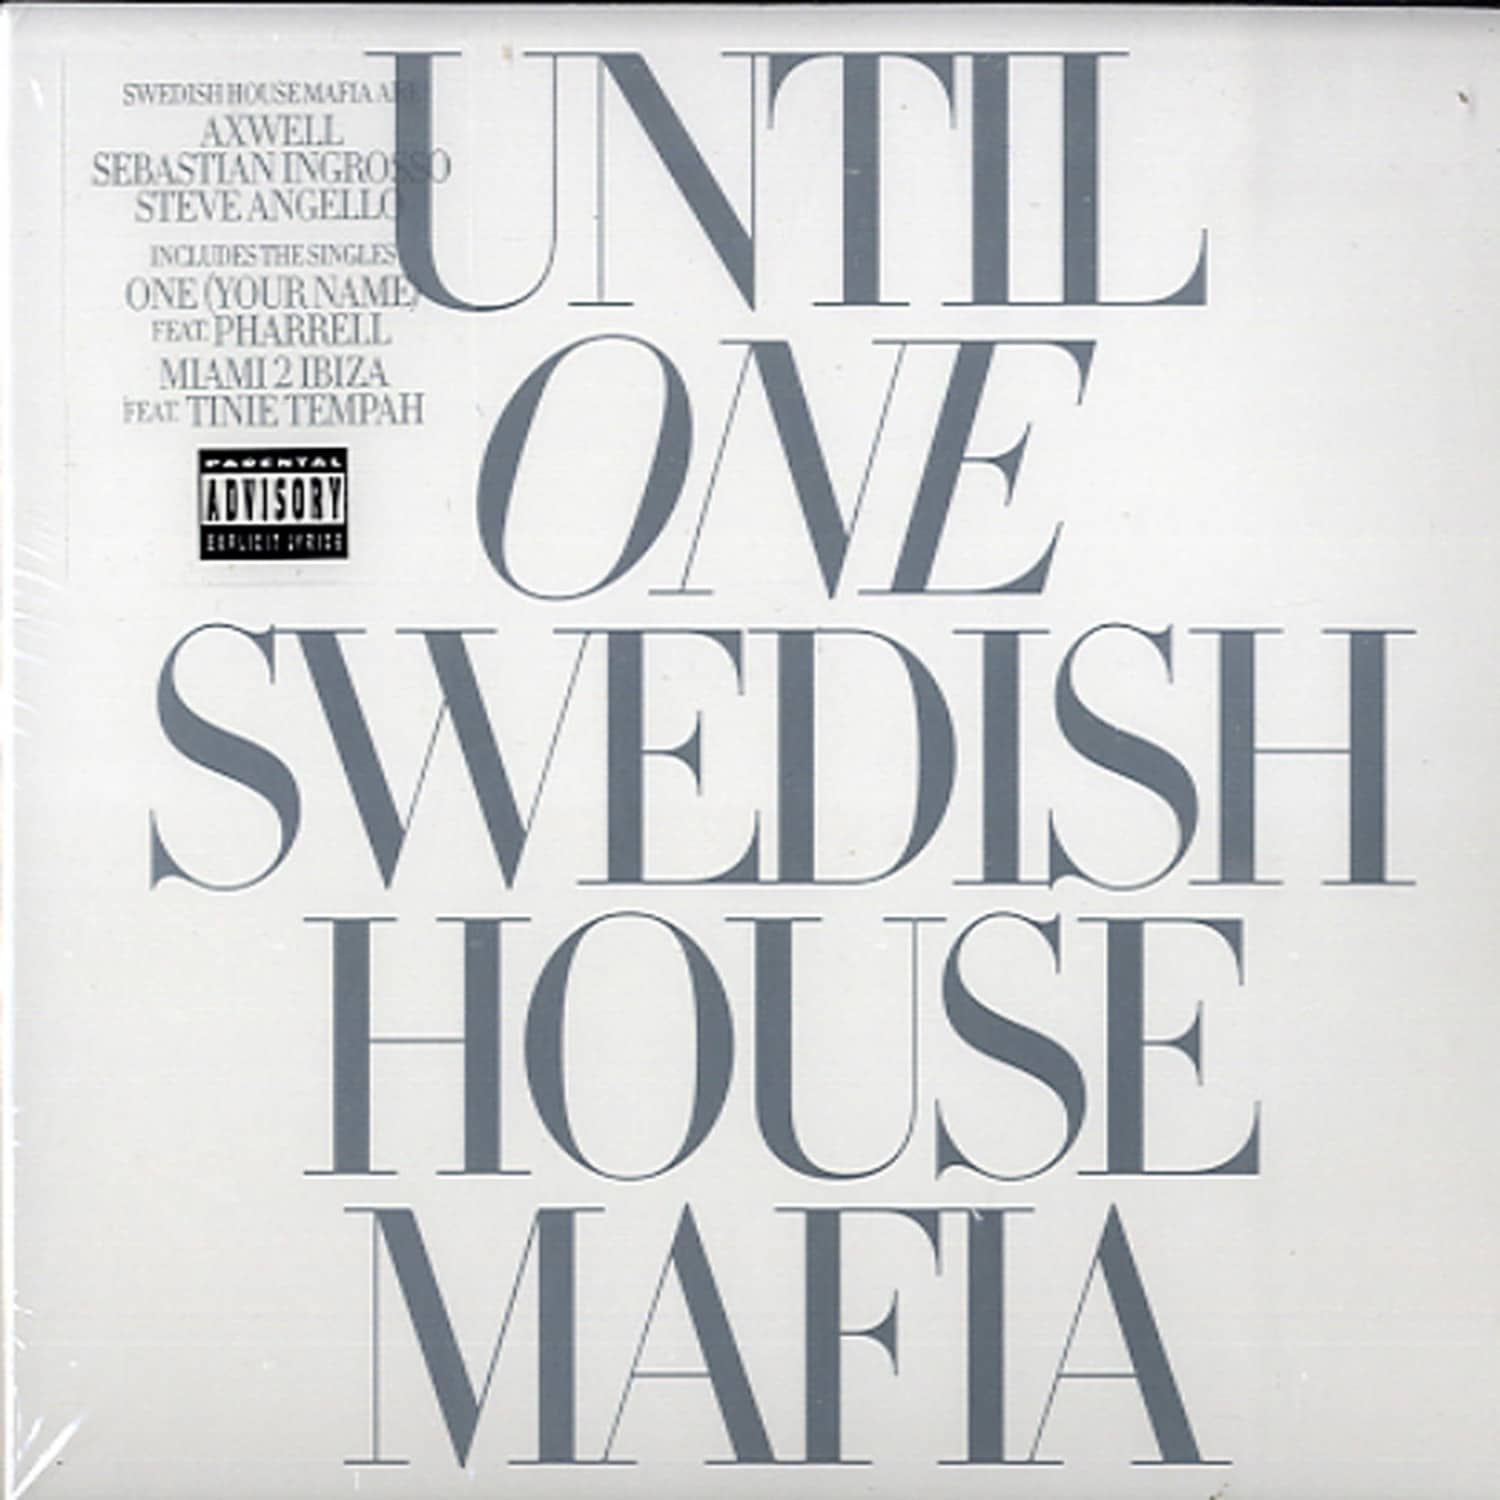 swedish house mafia itunes plus